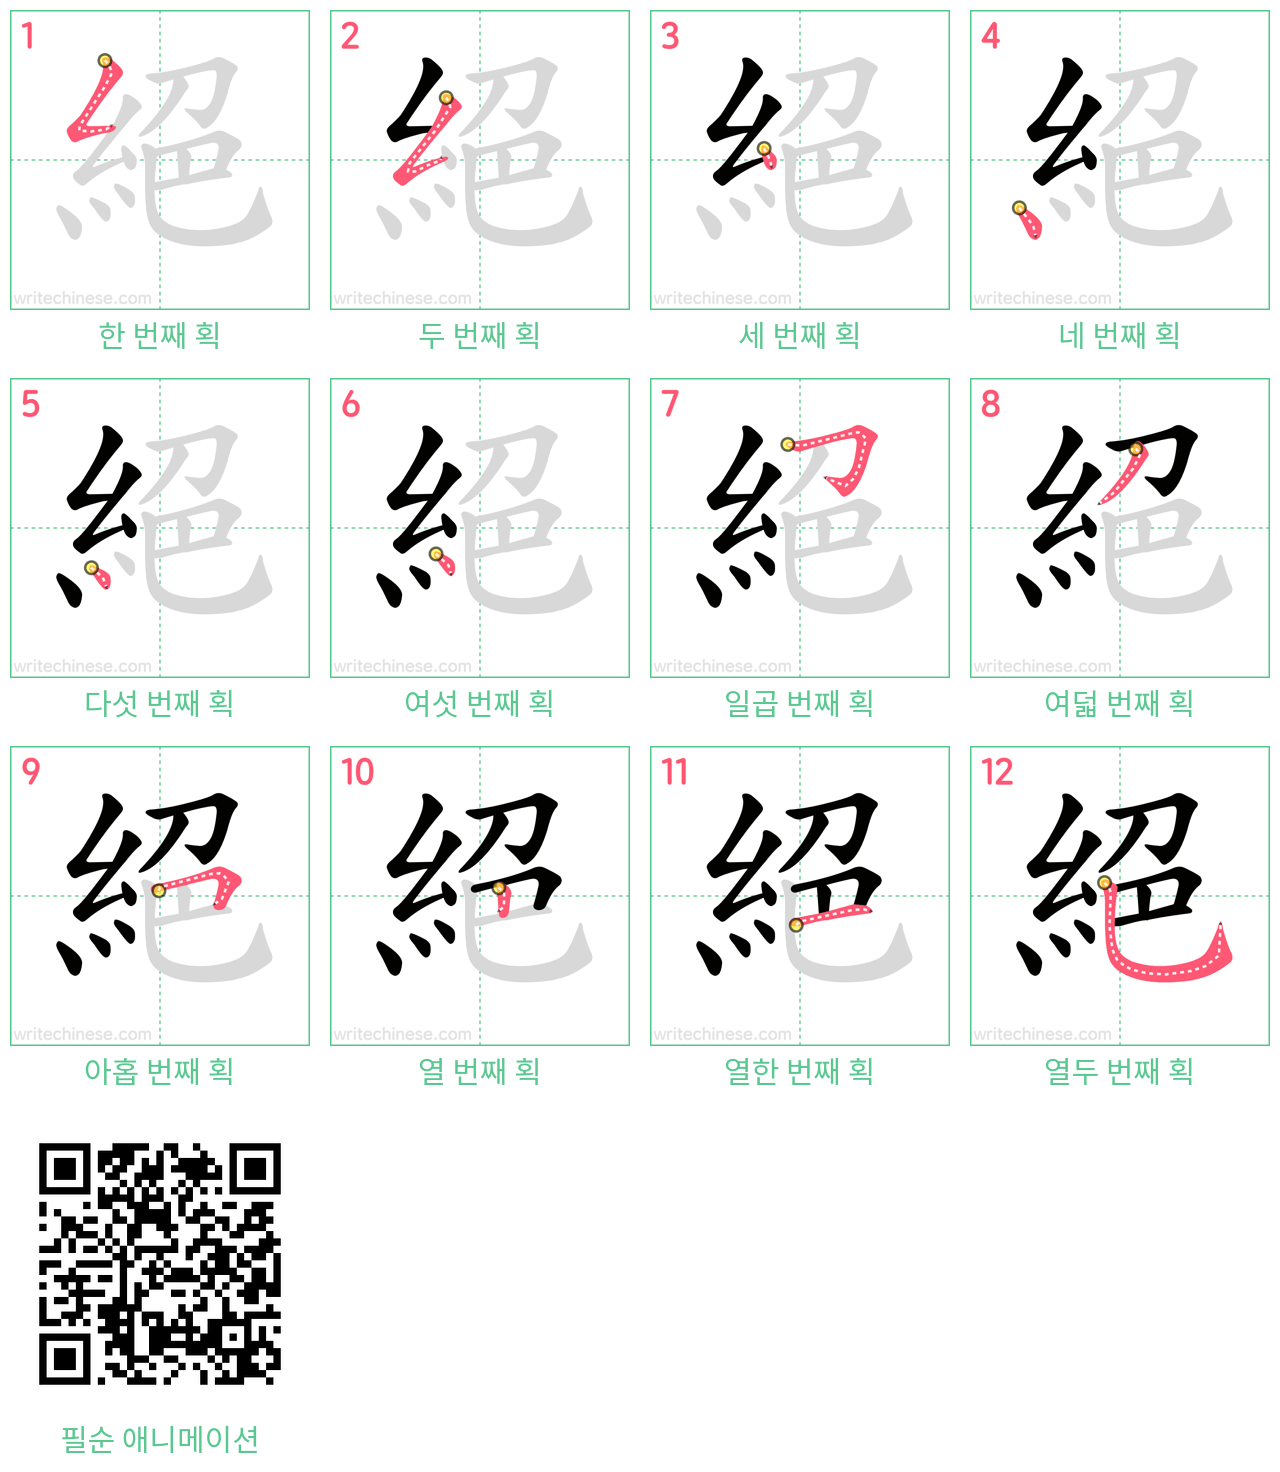 絕 step-by-step stroke order diagrams